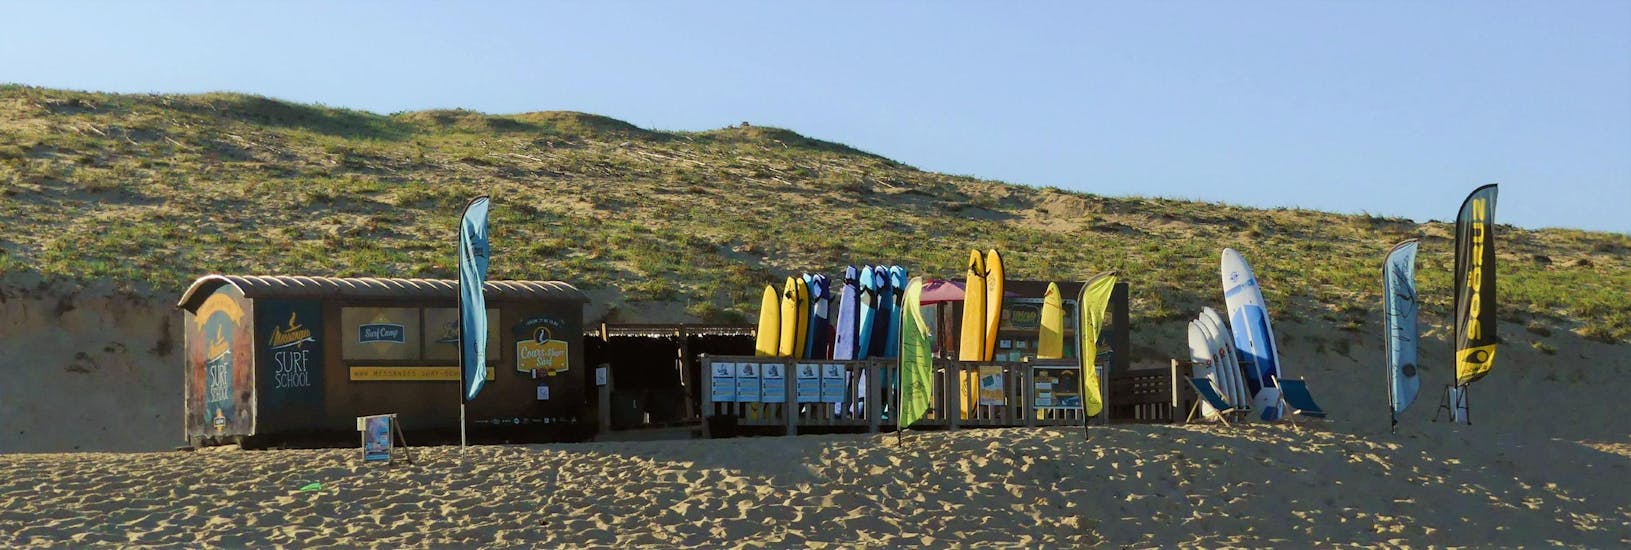 Le local de Messanges Surf School sur la plage sud de Messanges, où se déroulent les cours de surf.